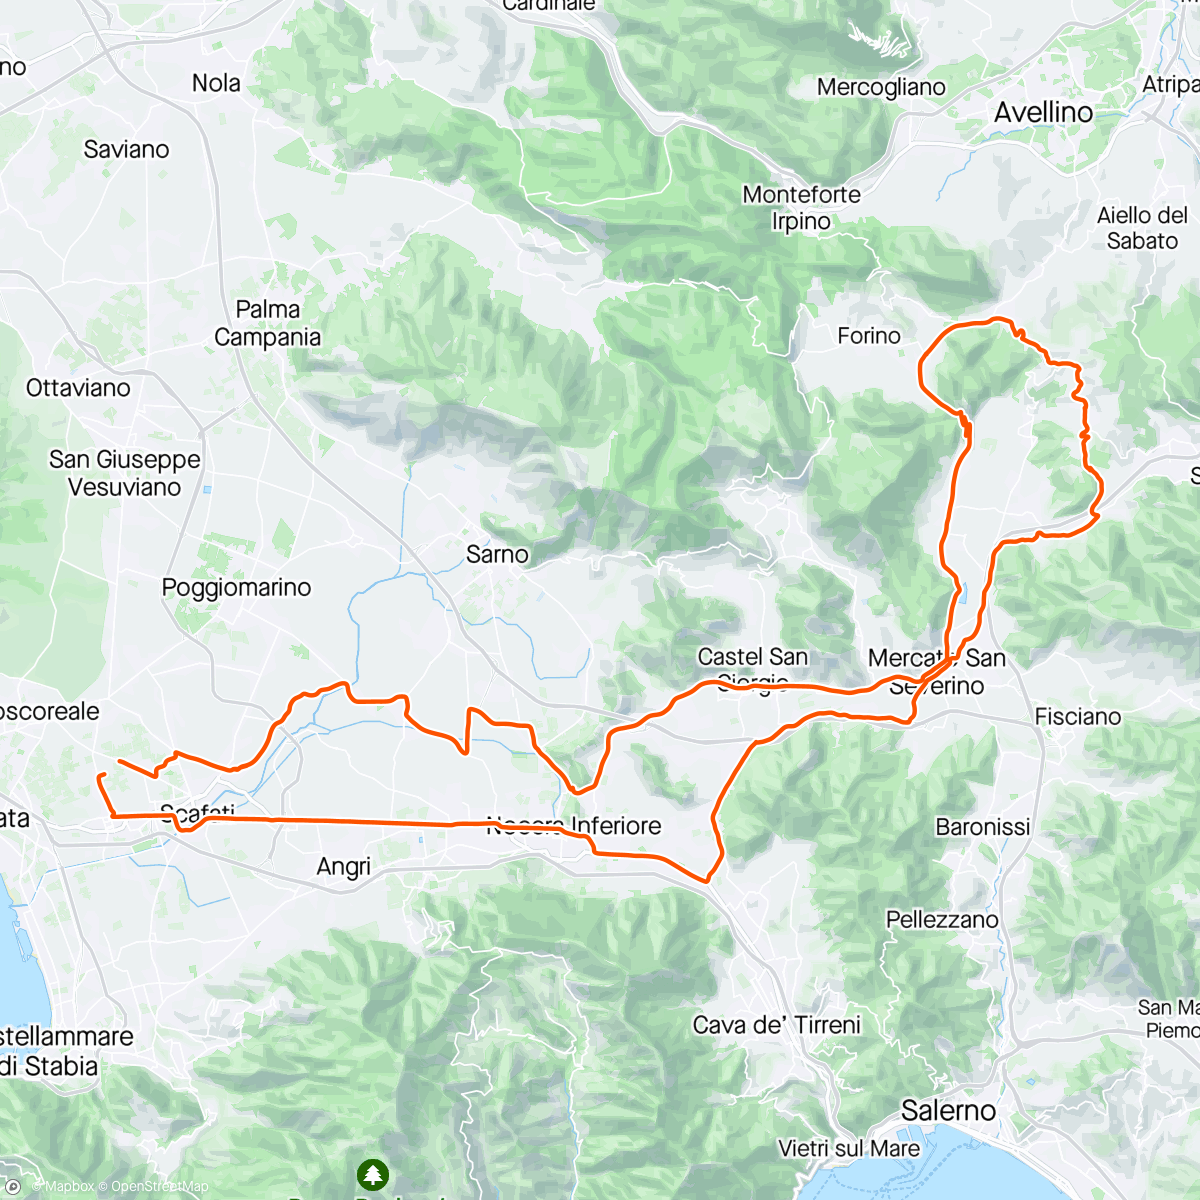 Map of the activity, Roccapimonte, Solofra, Banzano, Contrada. M. S. Severino